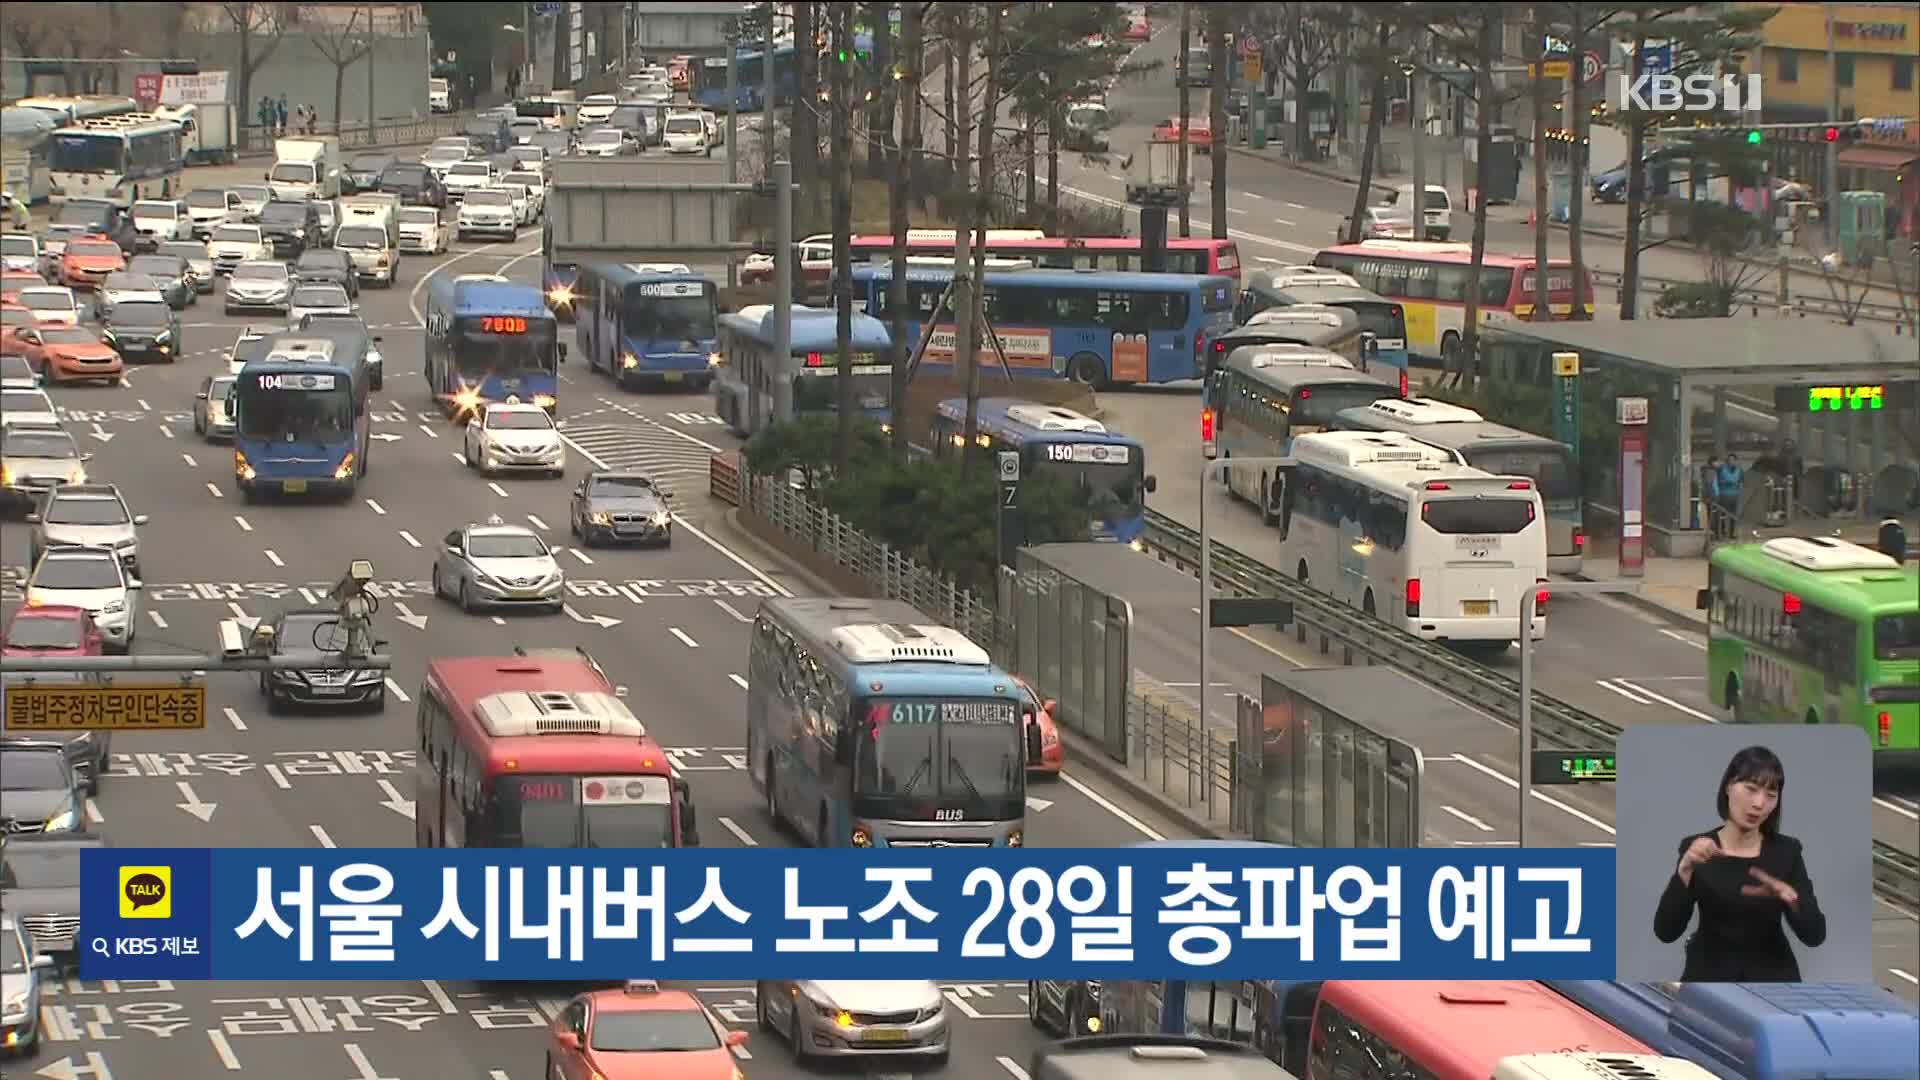 서울 시내버스 노조 28일 총파업 예고